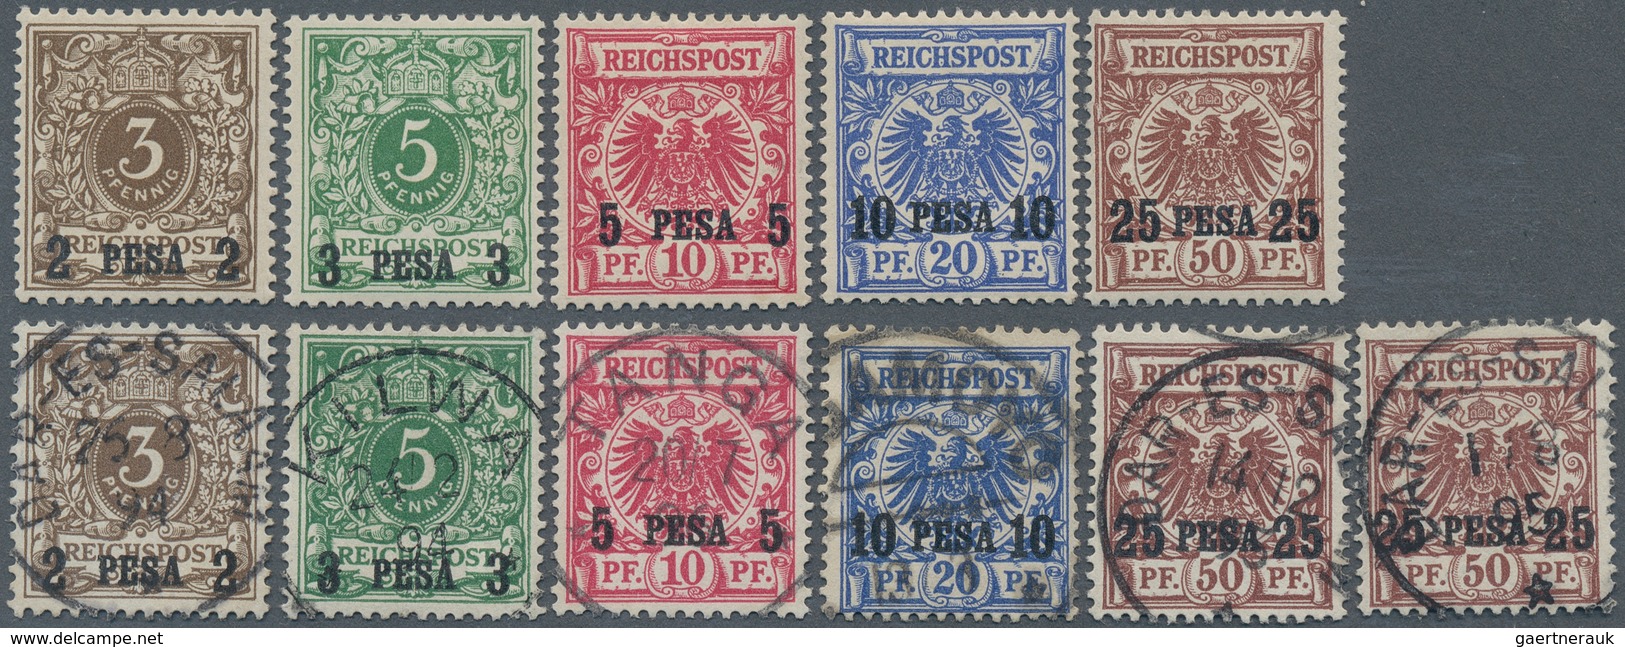 18581 Deutsch-Ostafrika: 1893, 3 P Bis 25 P. Auf Krone/Adler, Fünf Aufdruckwerte Ungebraucht Mit Falzspur, - Deutsch-Ostafrika